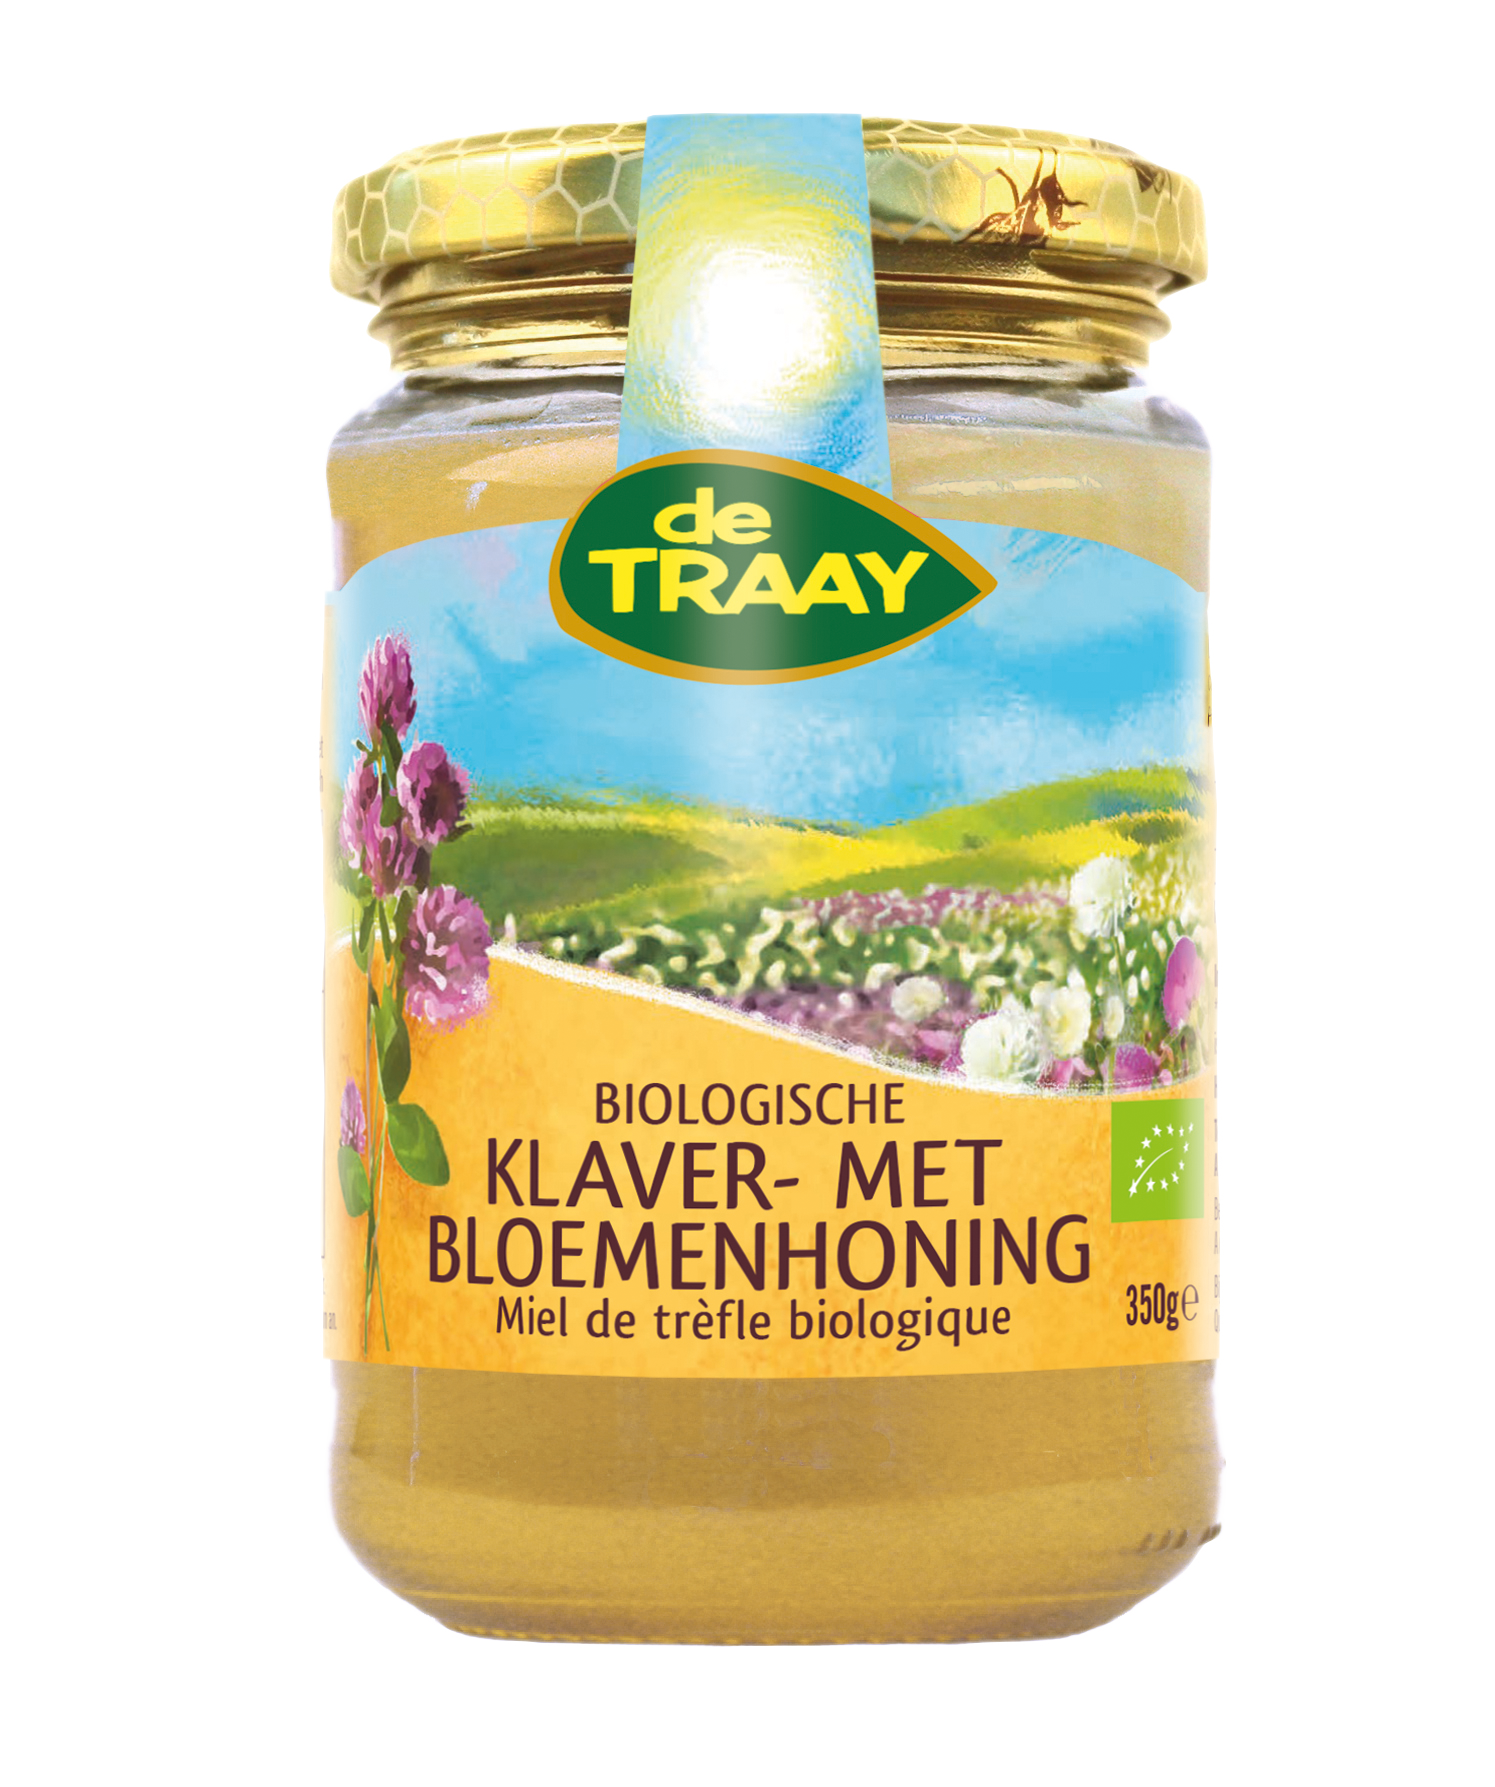 Organic clover with blossom honey